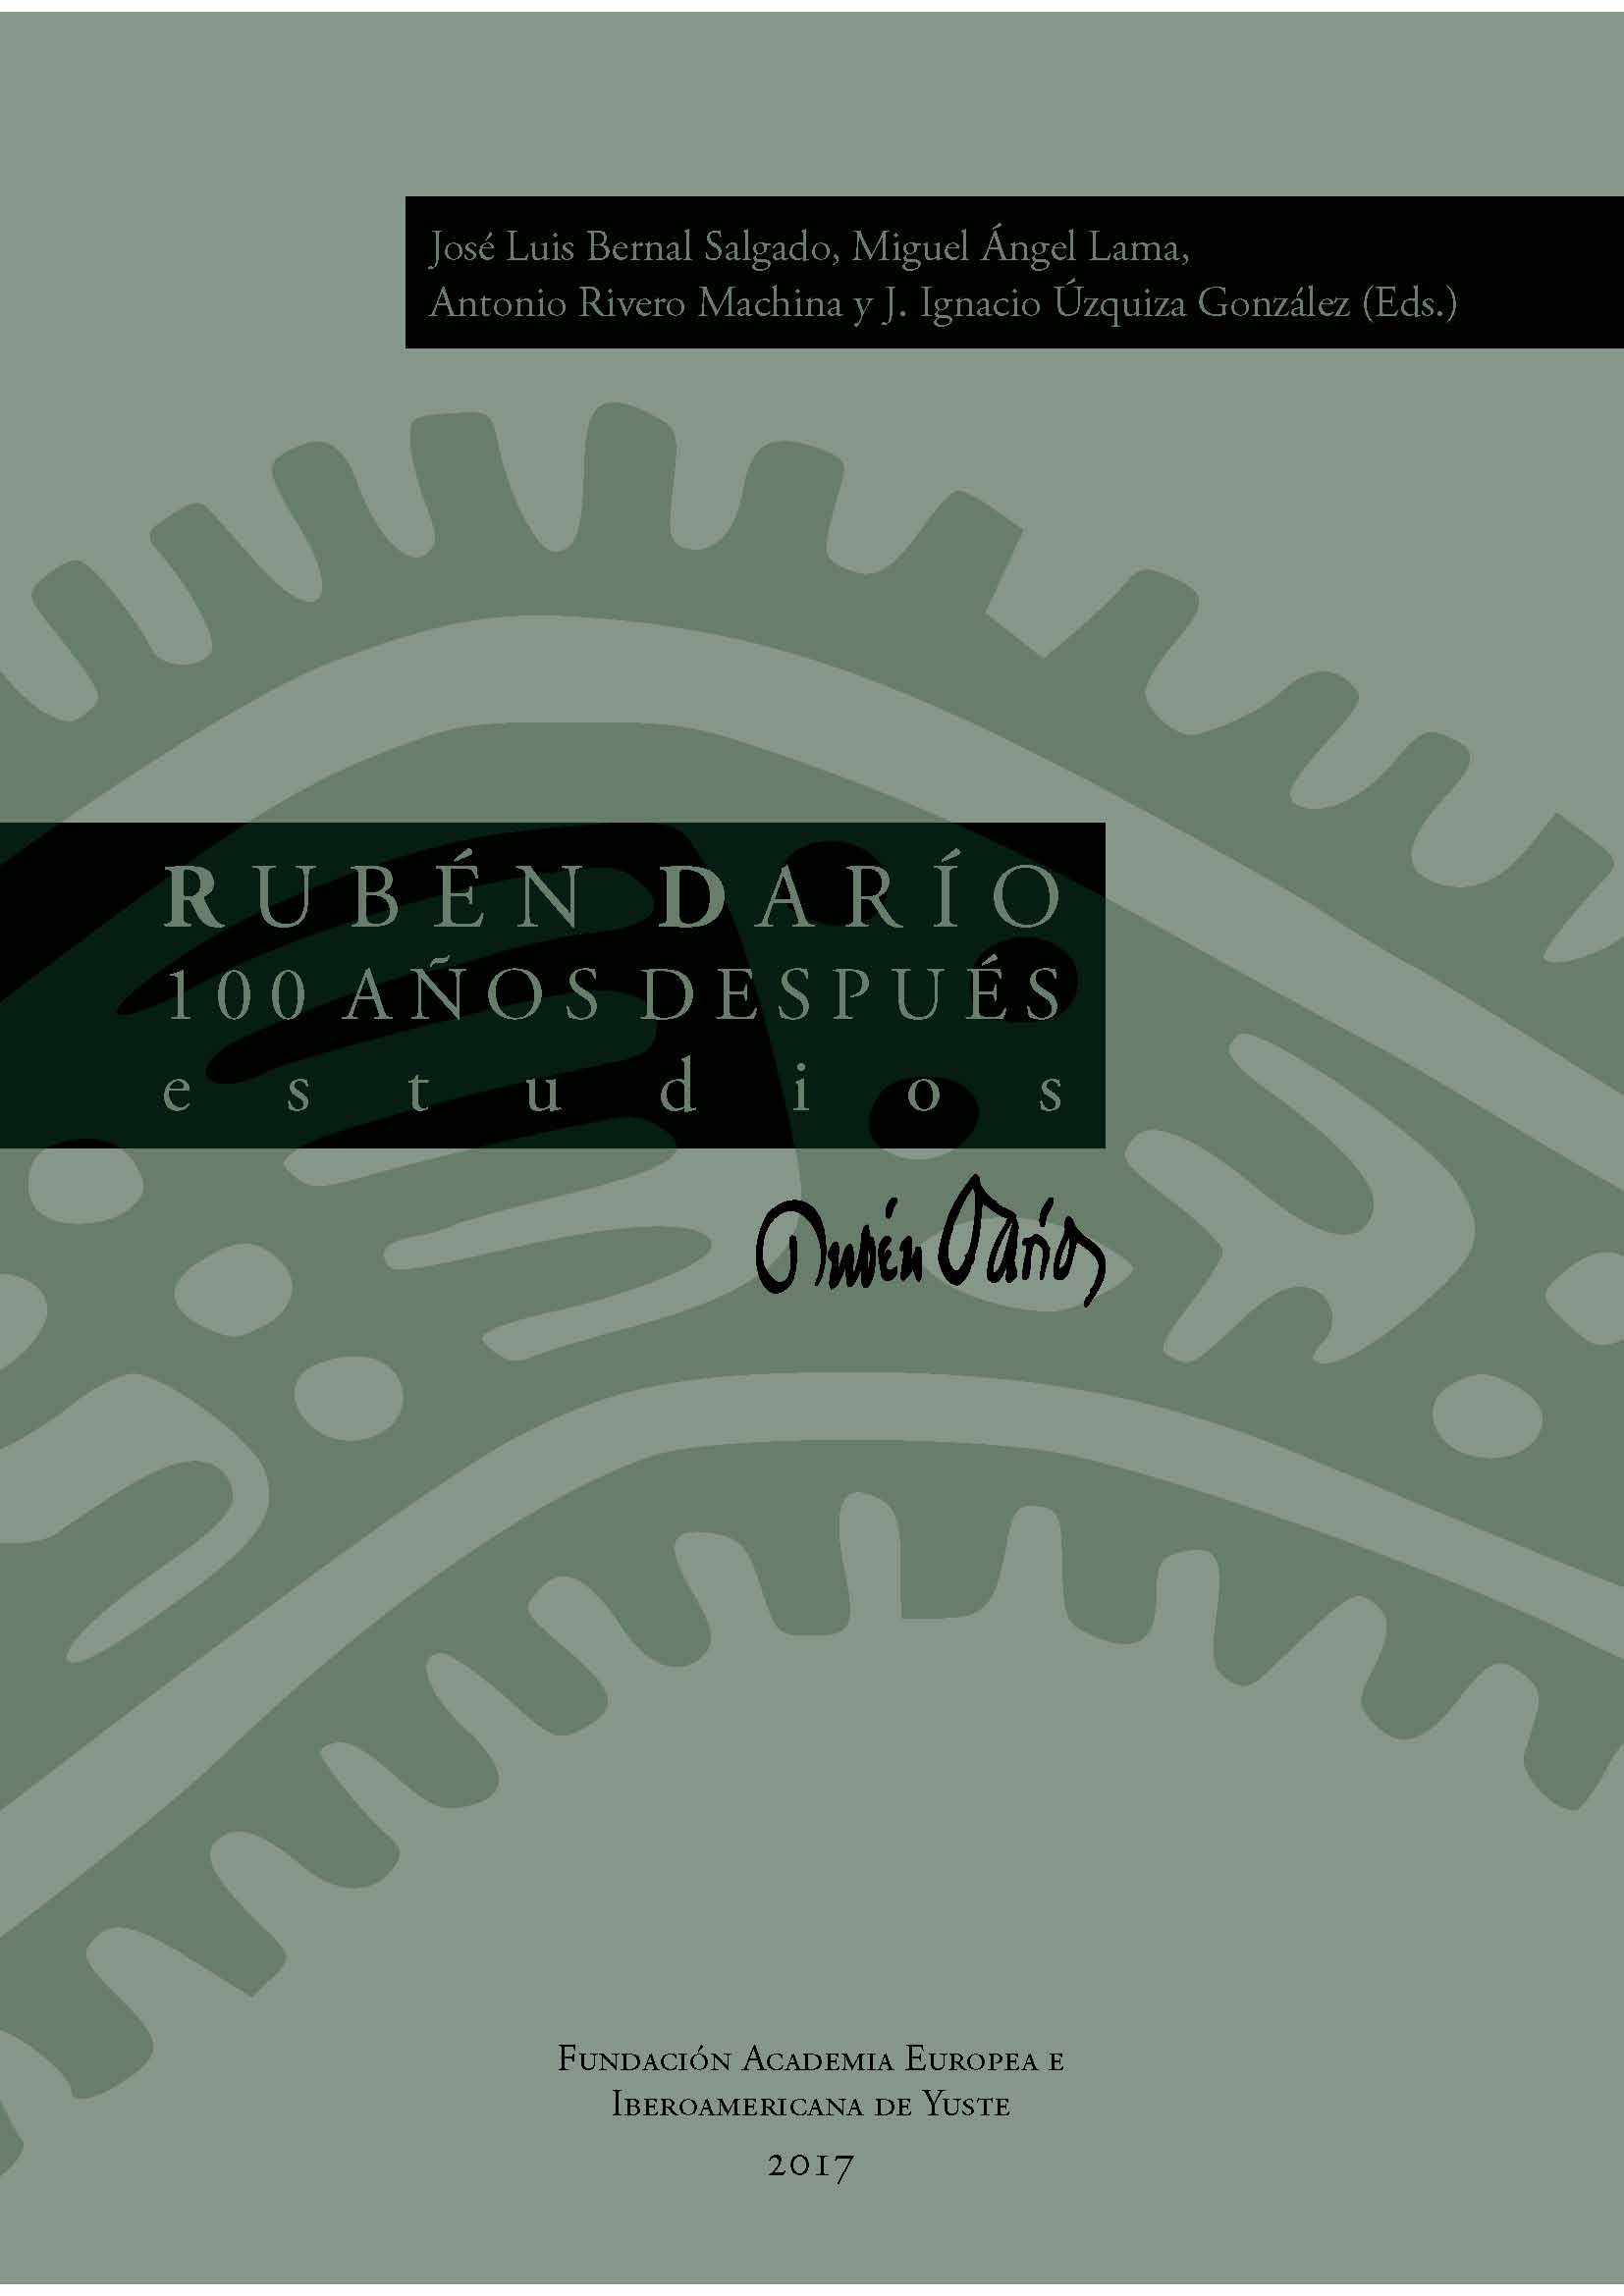 Imagen de portada del libro Rubén Darío 100 años después